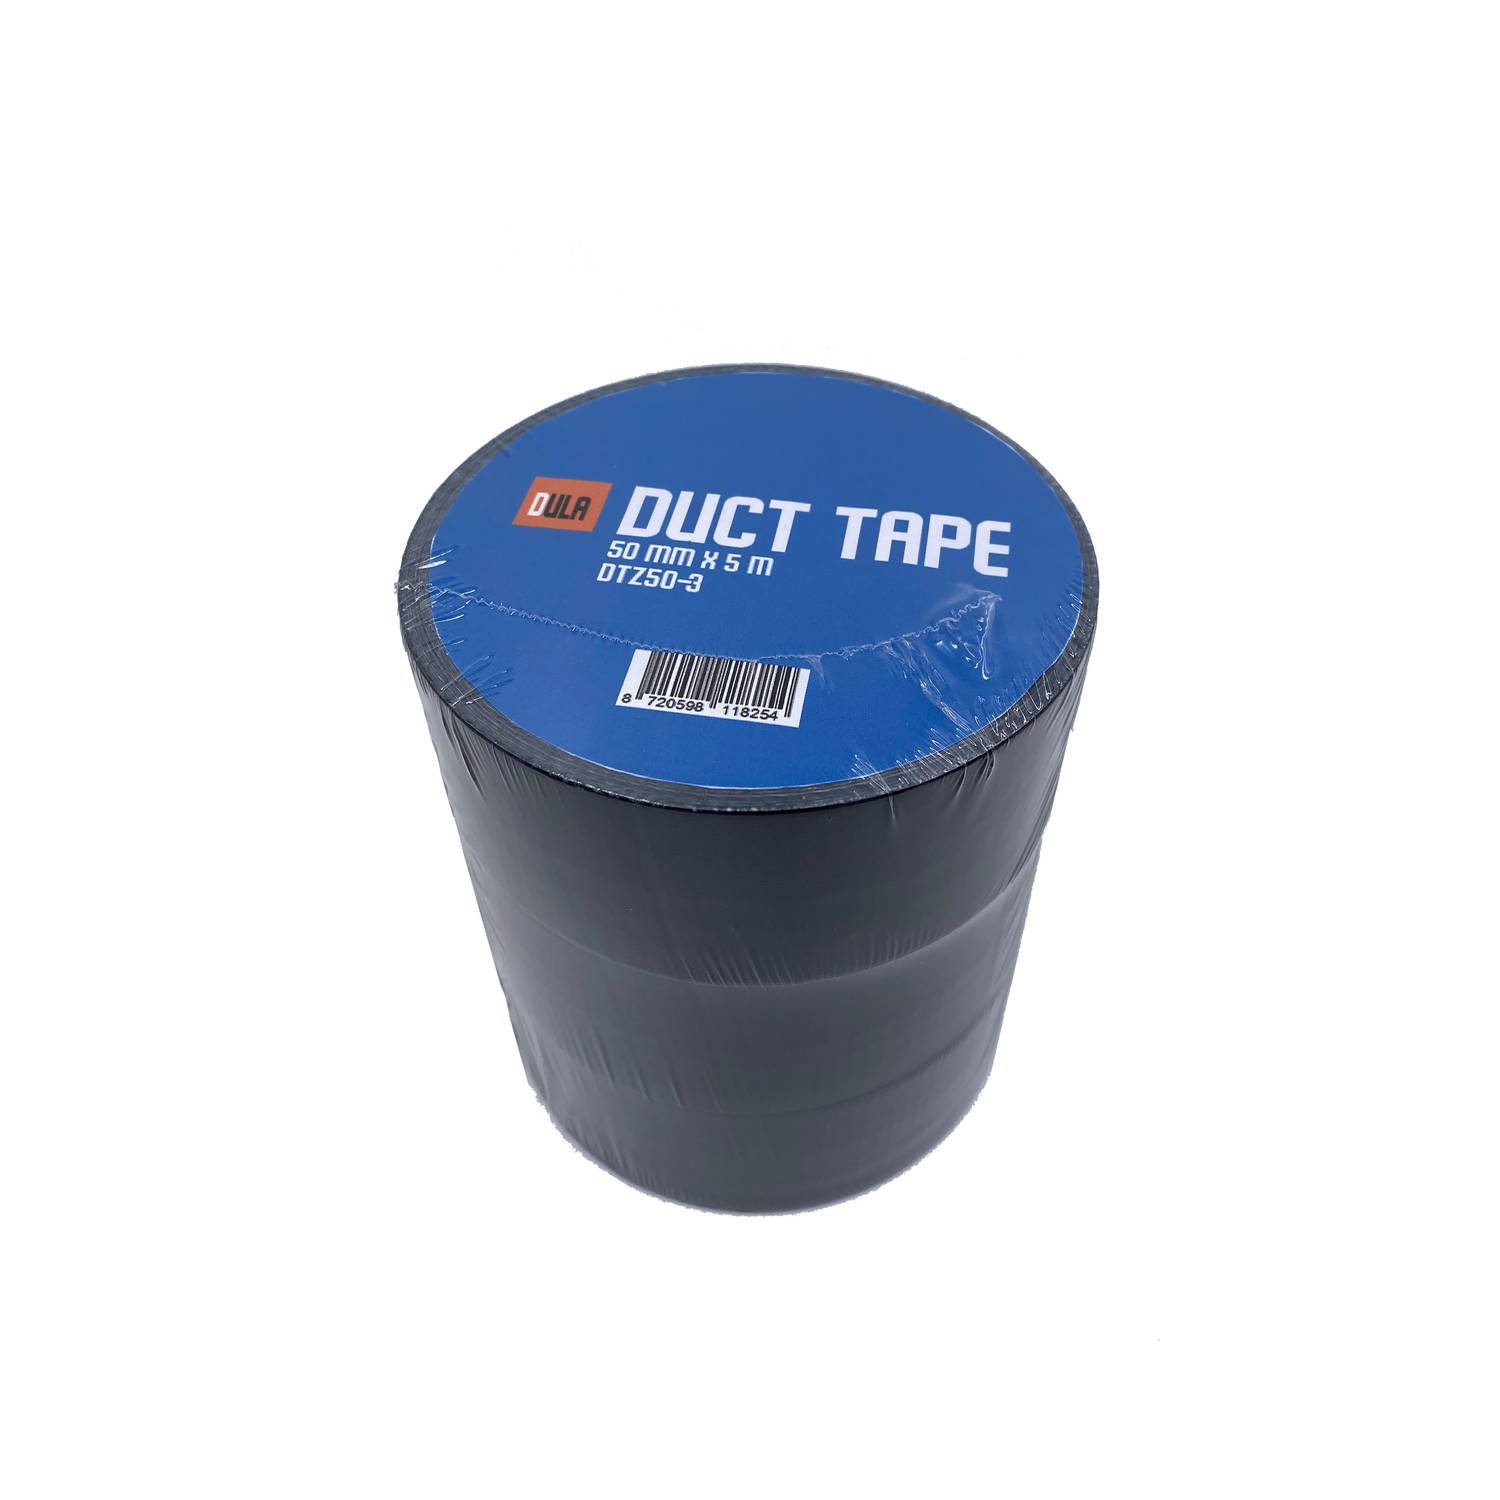 Doordeweekse dagen Bijna Outlook DULA Duct tape - Zwart - 50 mm x 50m - 3 Rollen Ducktape - Reparatie tape |  Blokker